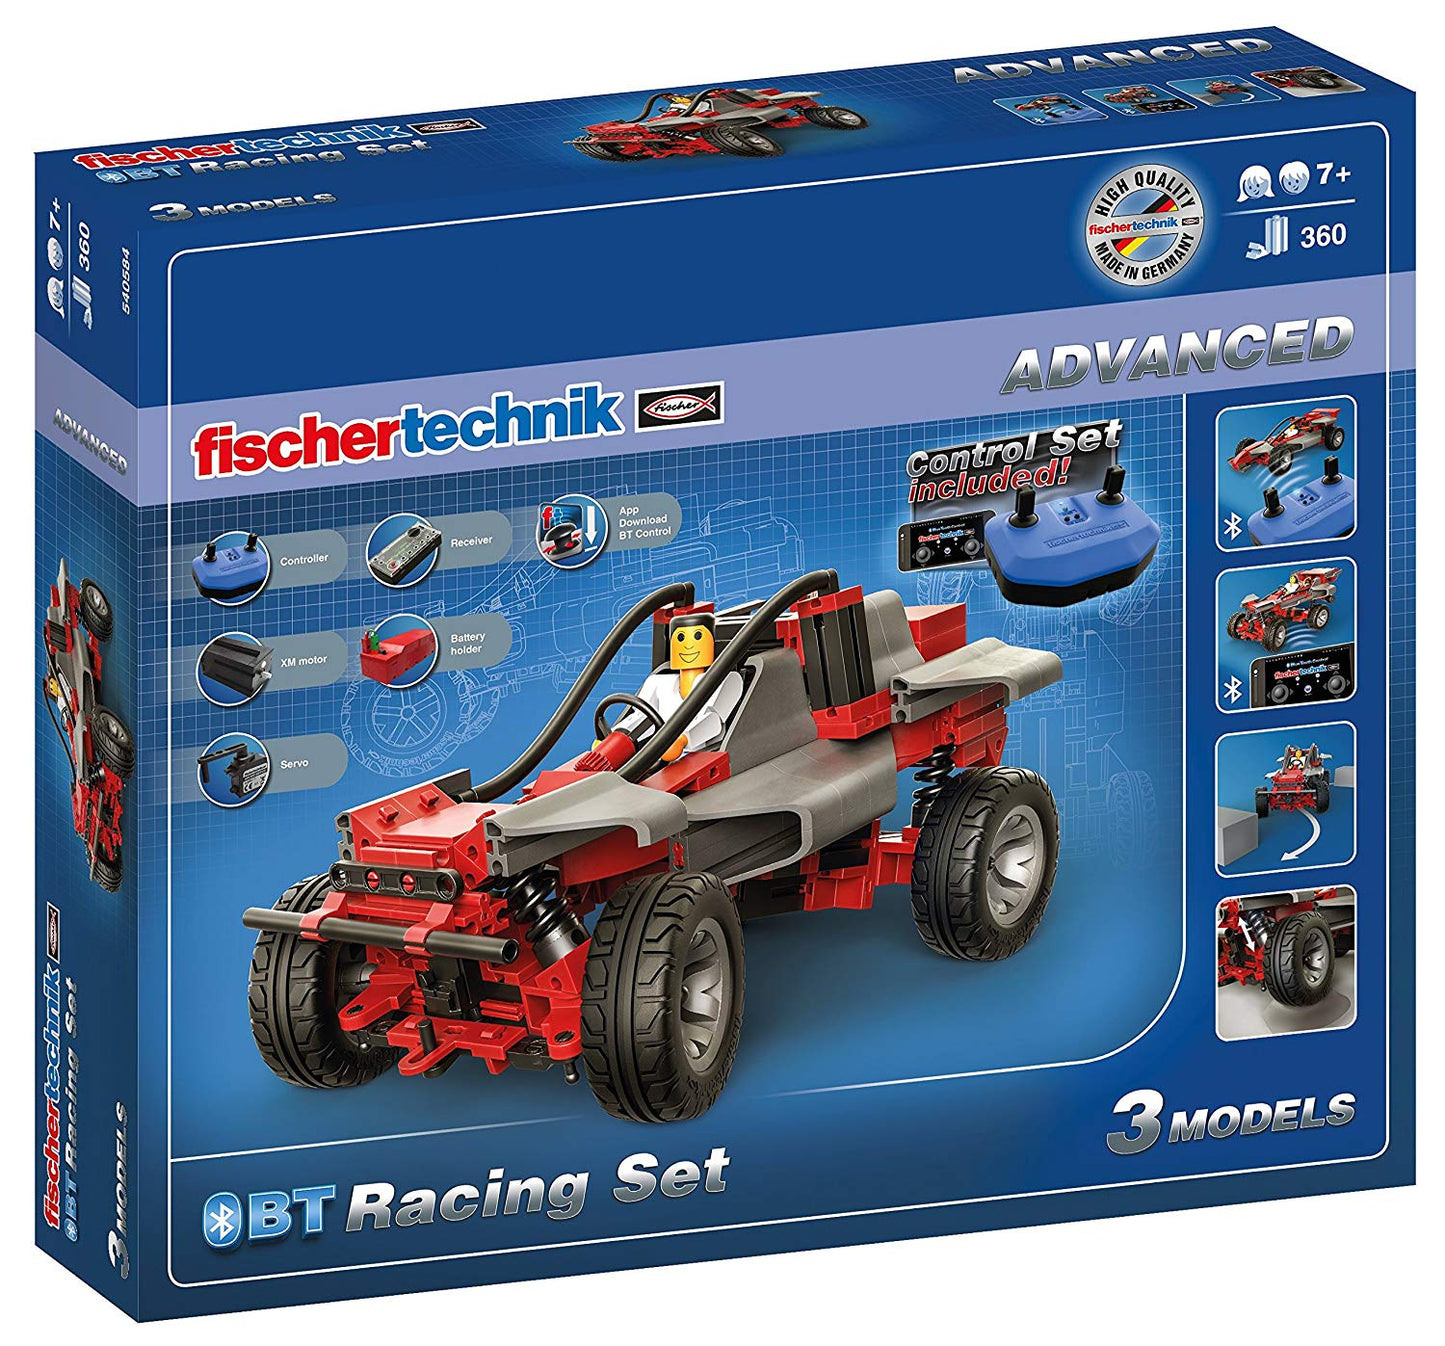 fischertechnik Advanced BT Racing Set Construction